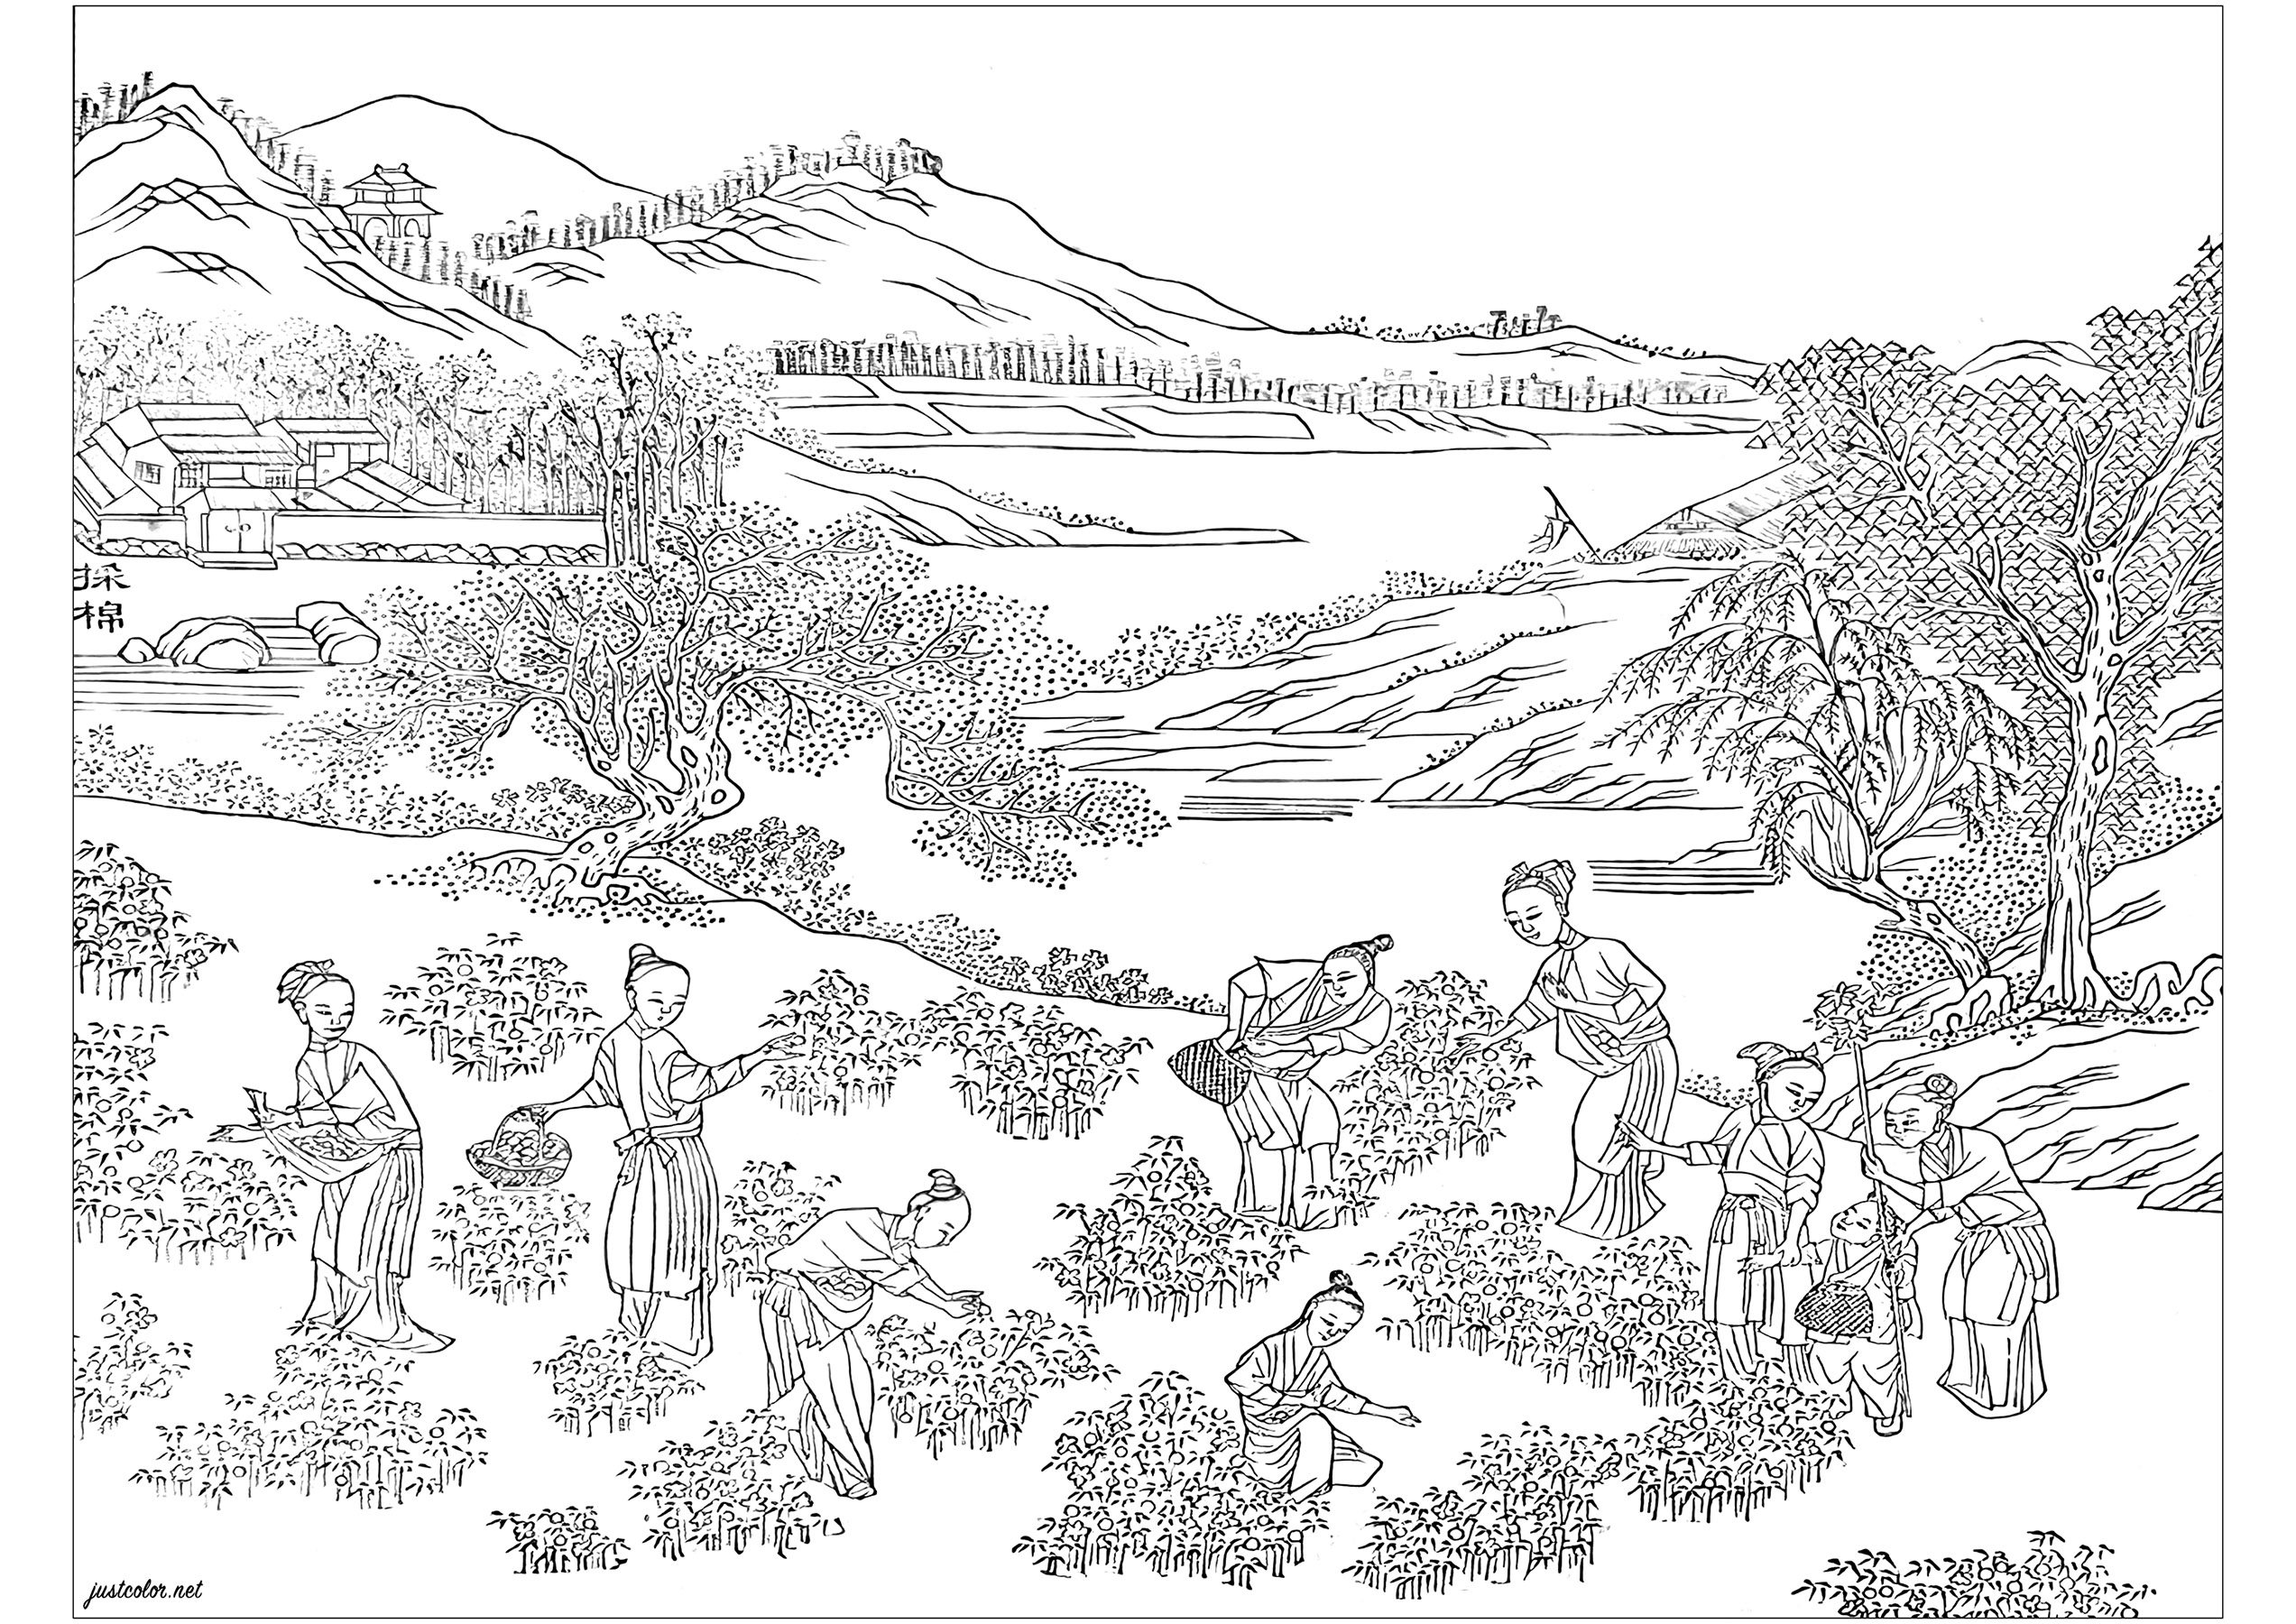 Ausmalbild nach einer illustrierten Seite aus dem Album 'Images illustrant une production de coton' (1765). Dieses Album wurde produziert, um die neuesten Technologien im Baumwollanbau und in der Textilproduktion im China des 18. Jahrhunderts zu fördern. Das Buch ist in der Chester Beatty Library in Dublin, Irland, ausgestellt, Künstler : Olivier